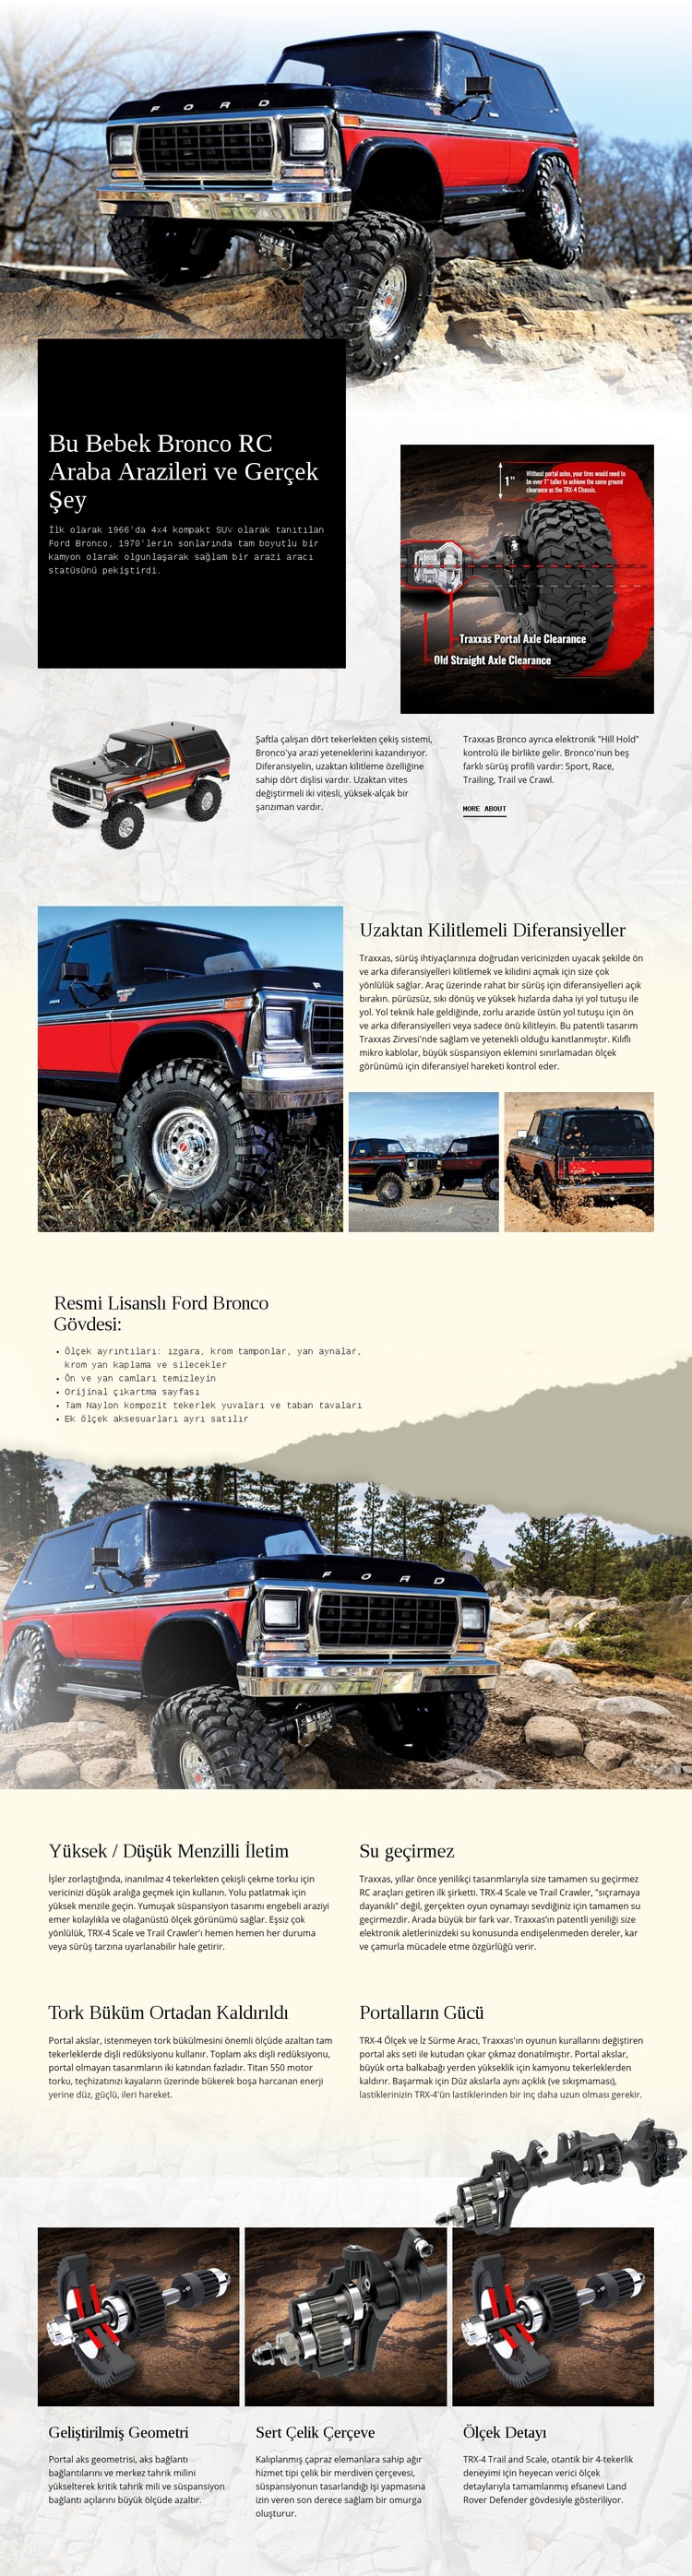 Bronco Rc Araba Web sitesi tasarımı